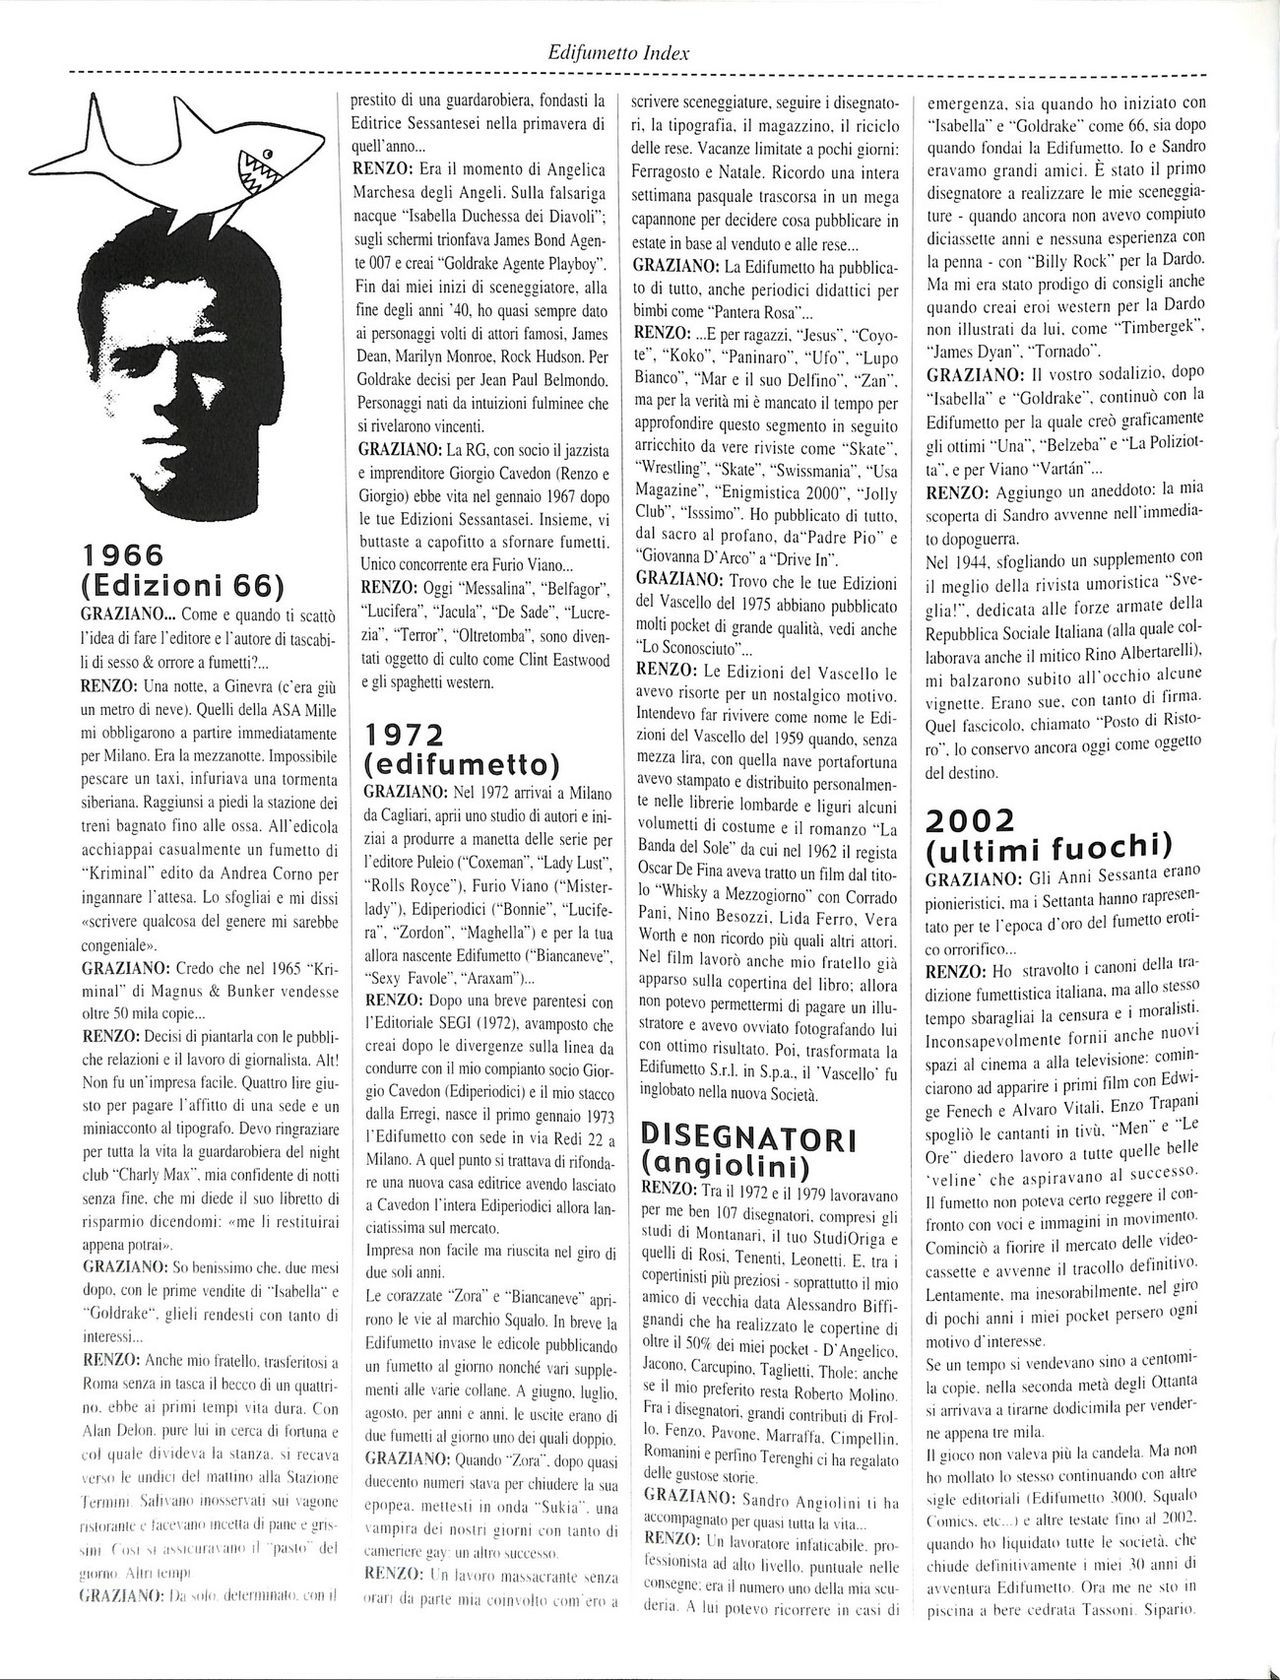 EdiFumetto index (Graziano Origa, 2002) [Italian] 13